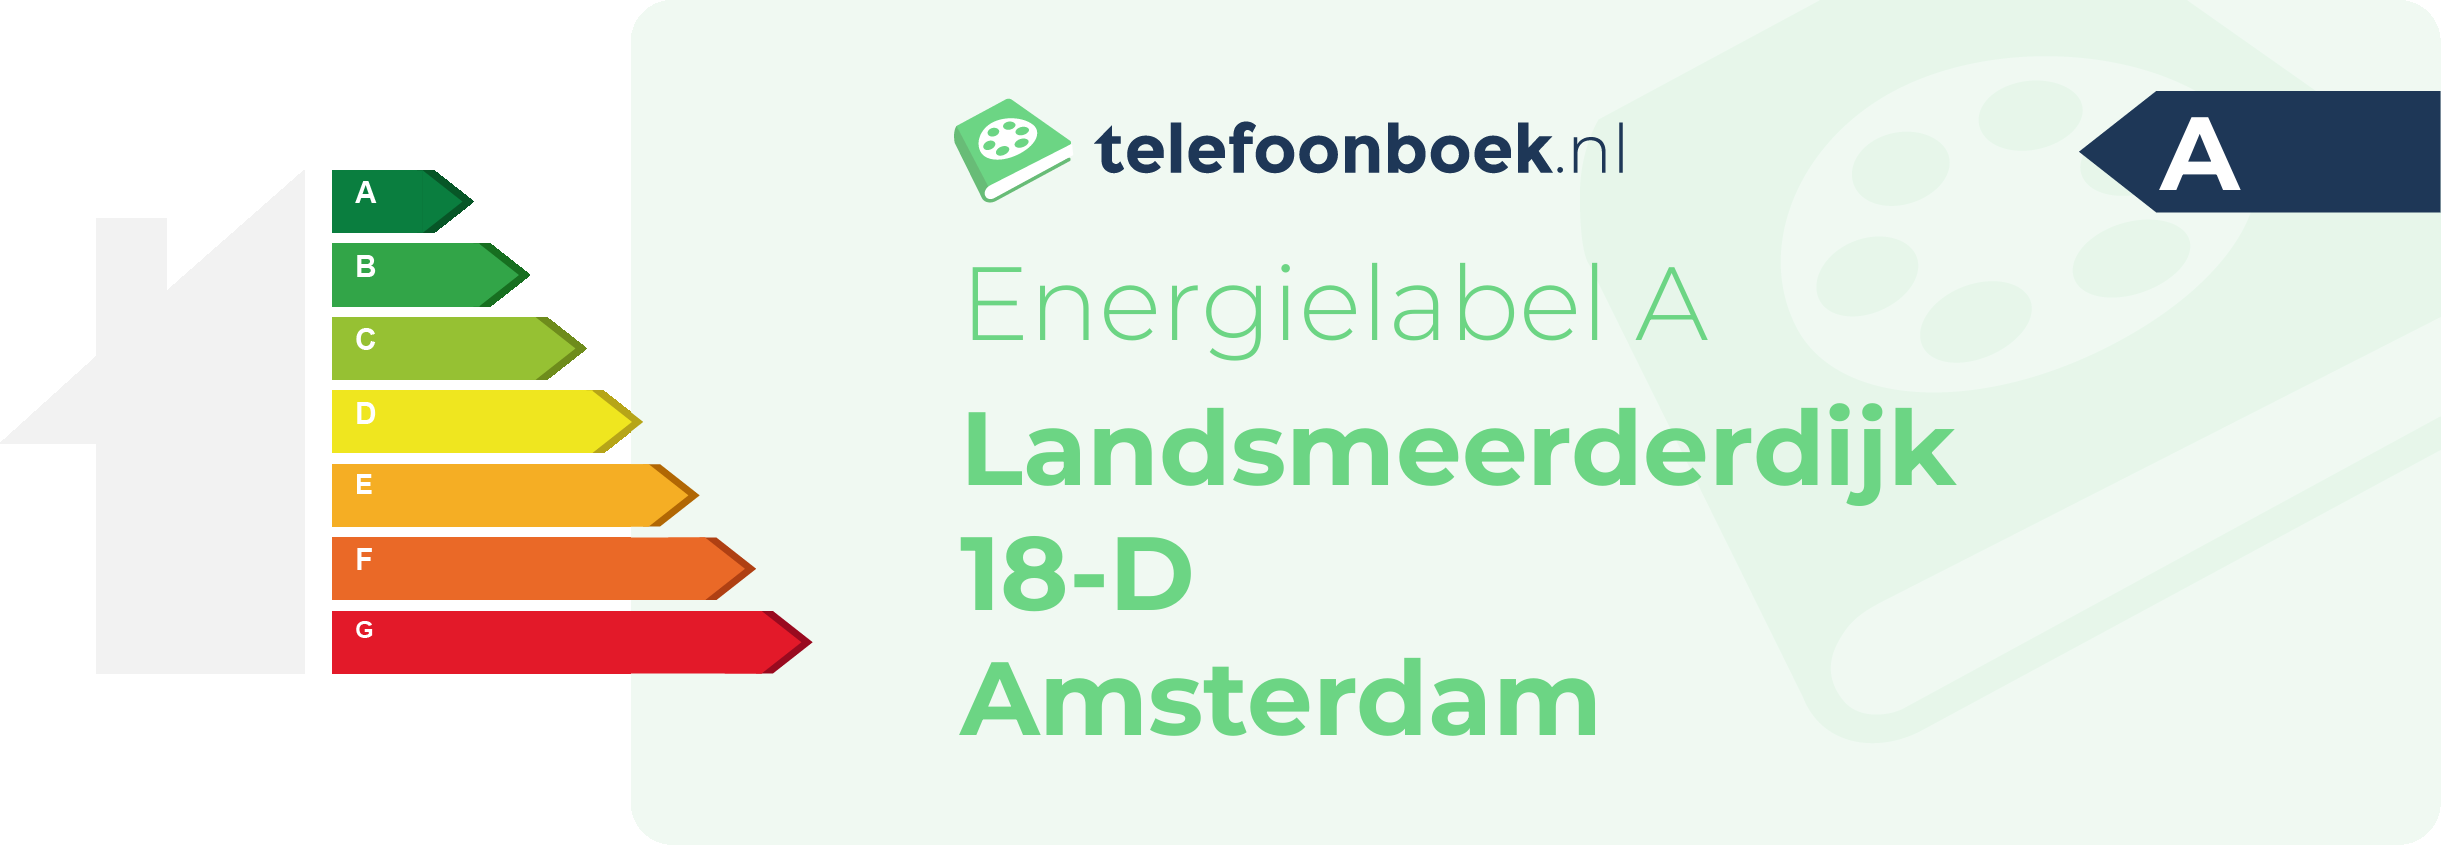 Energielabel Landsmeerderdijk 18-D Amsterdam